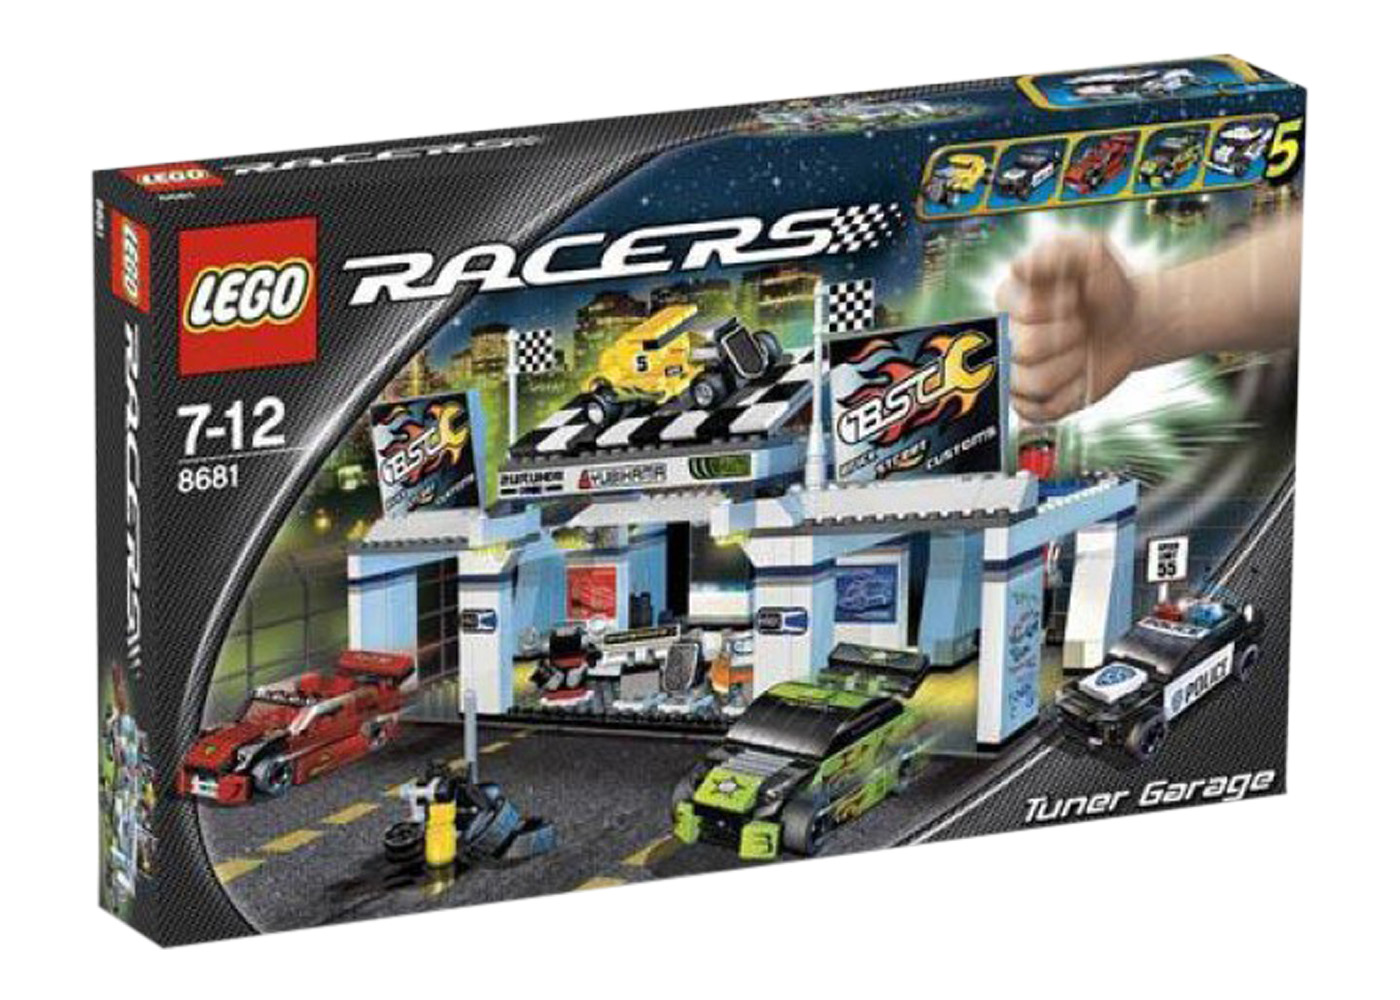 LEGO Racers Ferrari 430 Spider Set 8671 - US